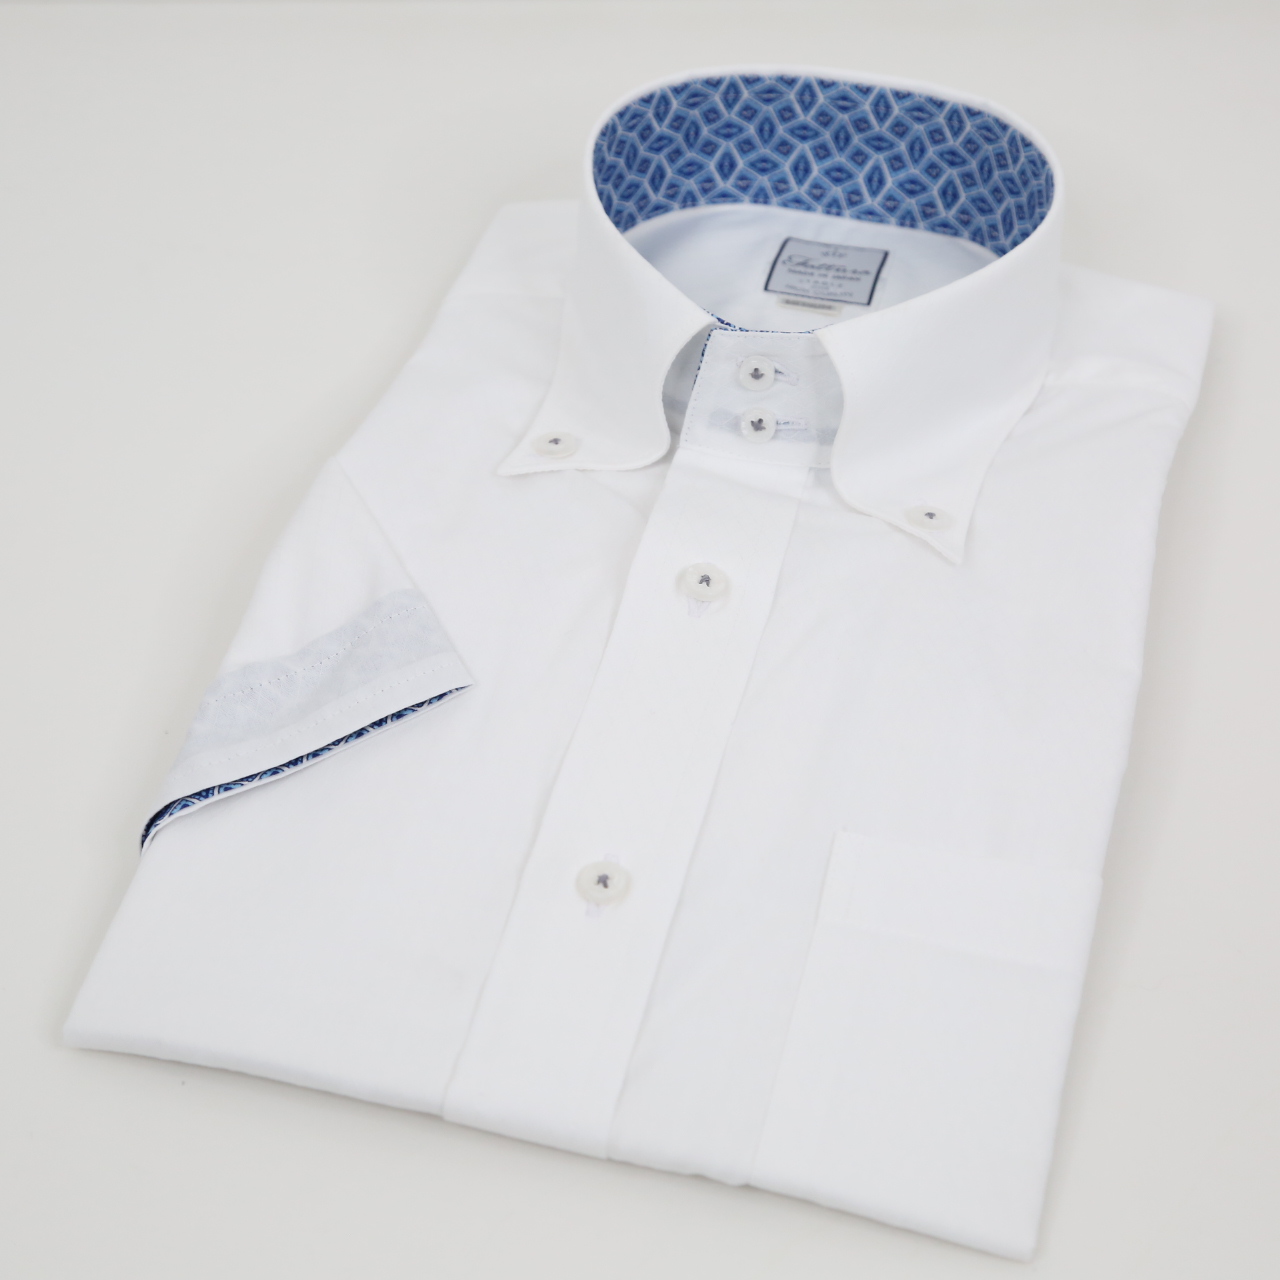 半袖シャツ  レギュラーサイズ  形態安定  ボタンダウン  ドゥエボットーニ  ホワイト  日本製